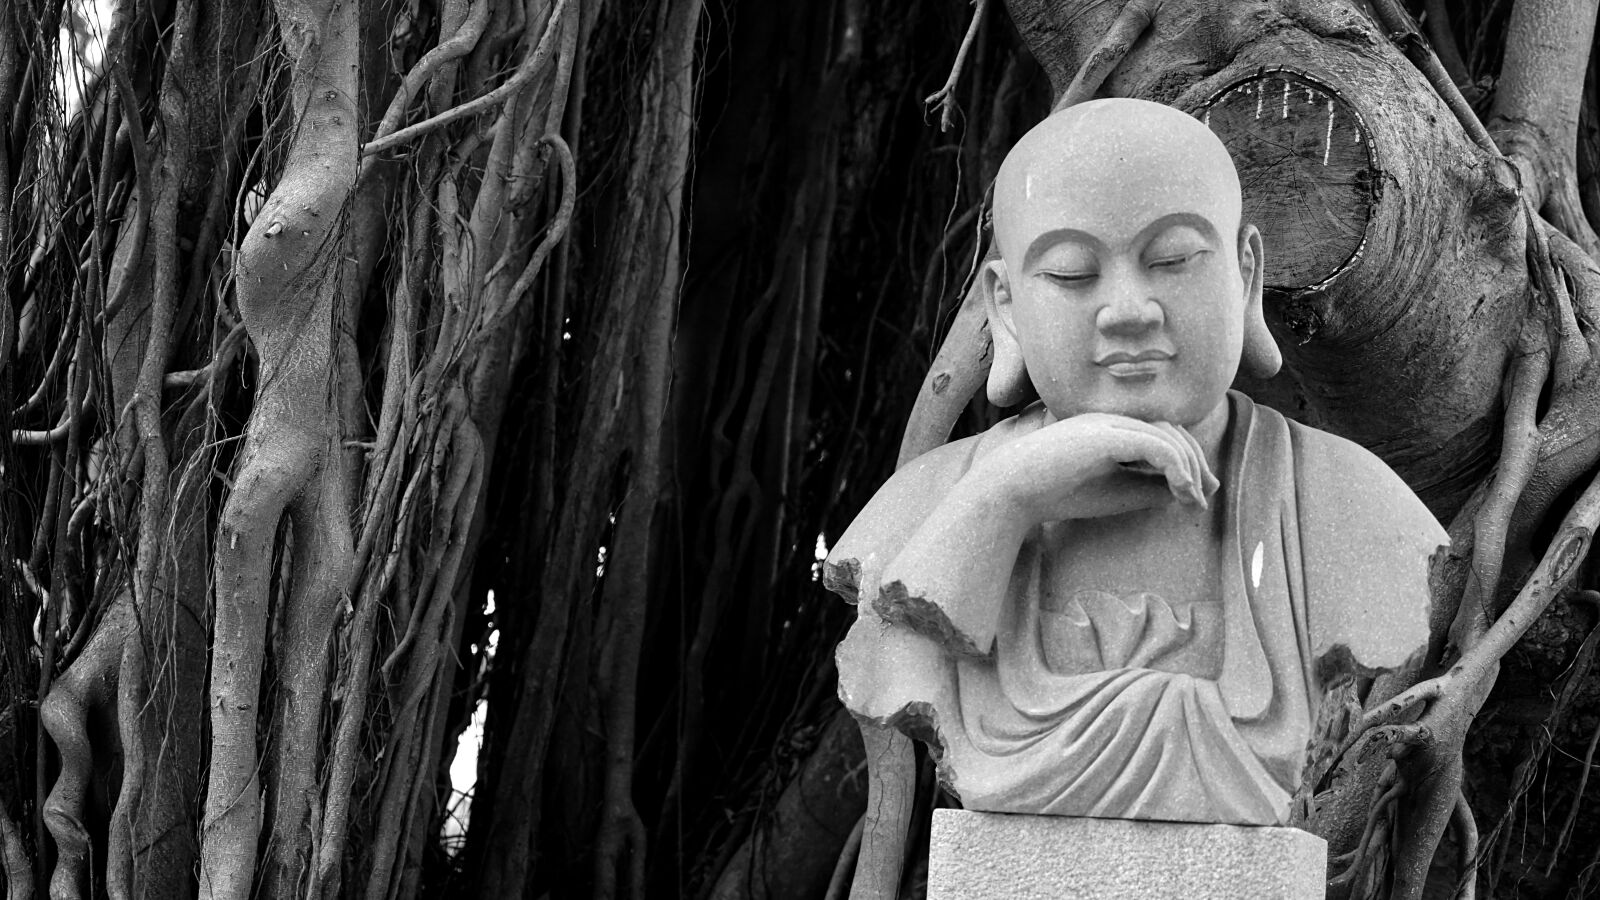 Sony Vario Tessar T* FE 24-70mm F4 ZA OSS sample photo. Buddha, banyan tree, religion photography